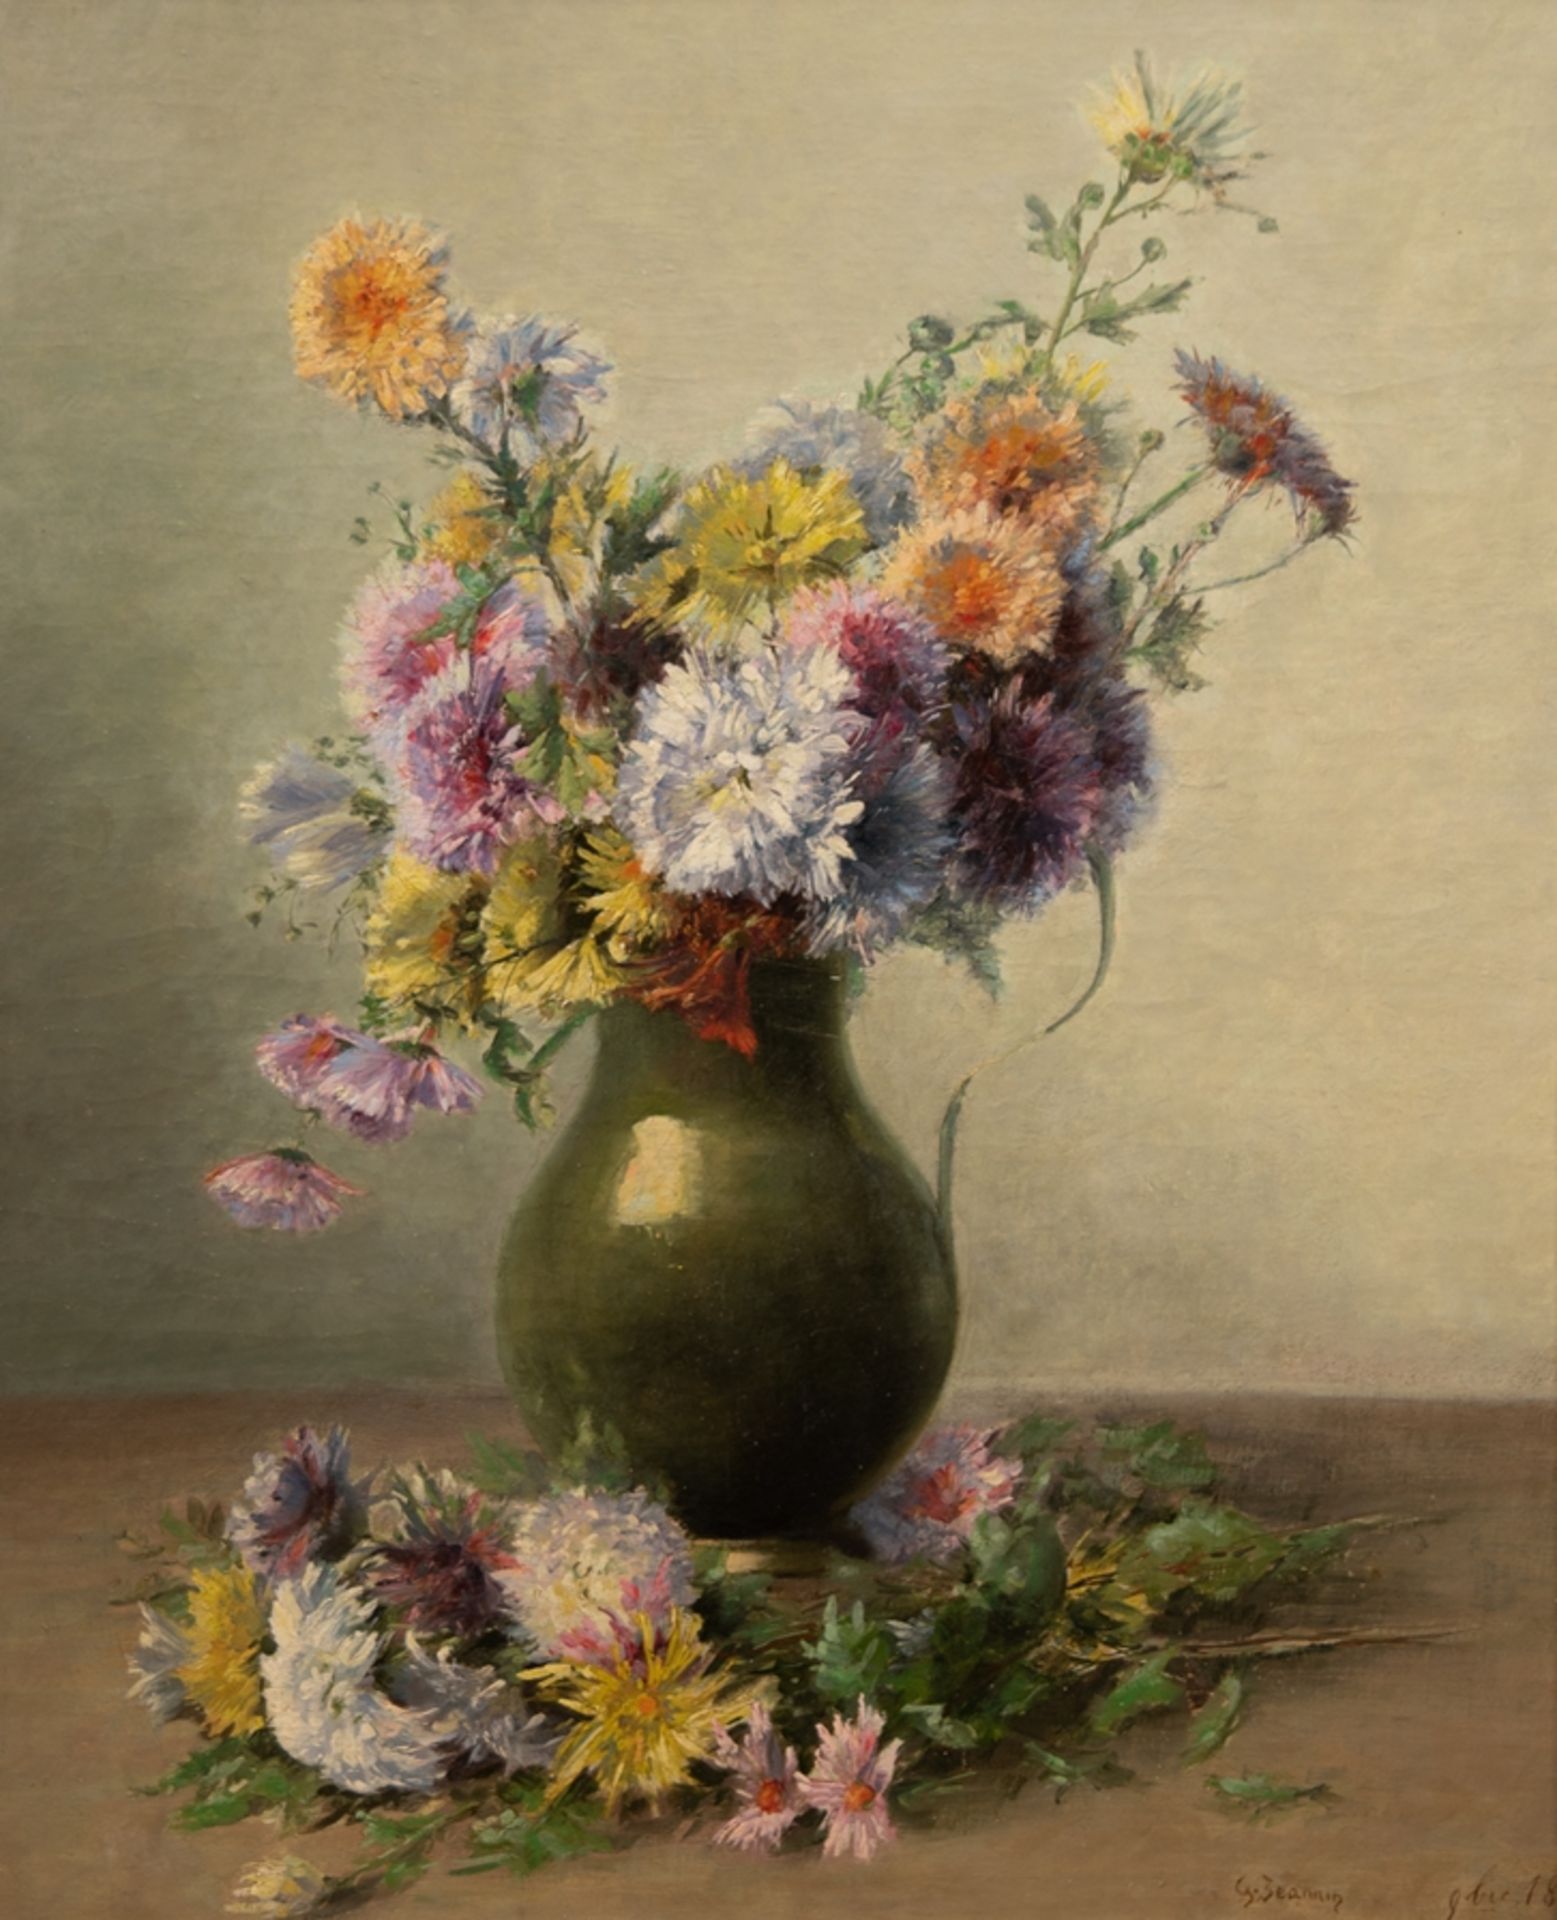 Jeannin, George (1841 Paris-1925 ebenda) "Blumenstilleben mit Sommerstrauß in Vase", Öl/ Lw., sign.